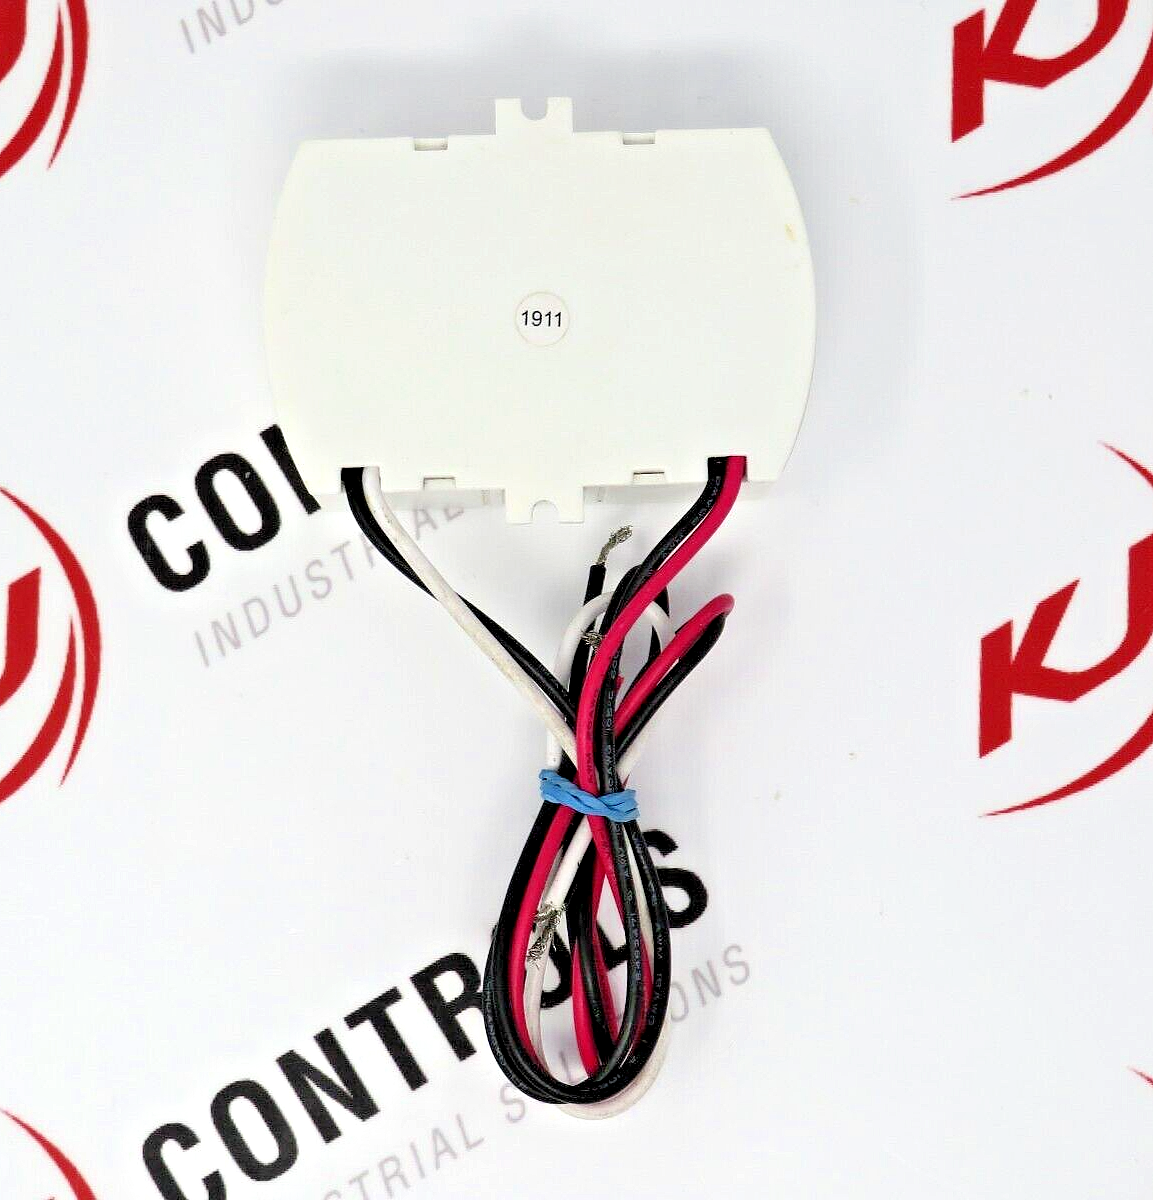 ES LD020H-VU16712-15 Constant Voltage LED Driver 12V 20W 1670mA